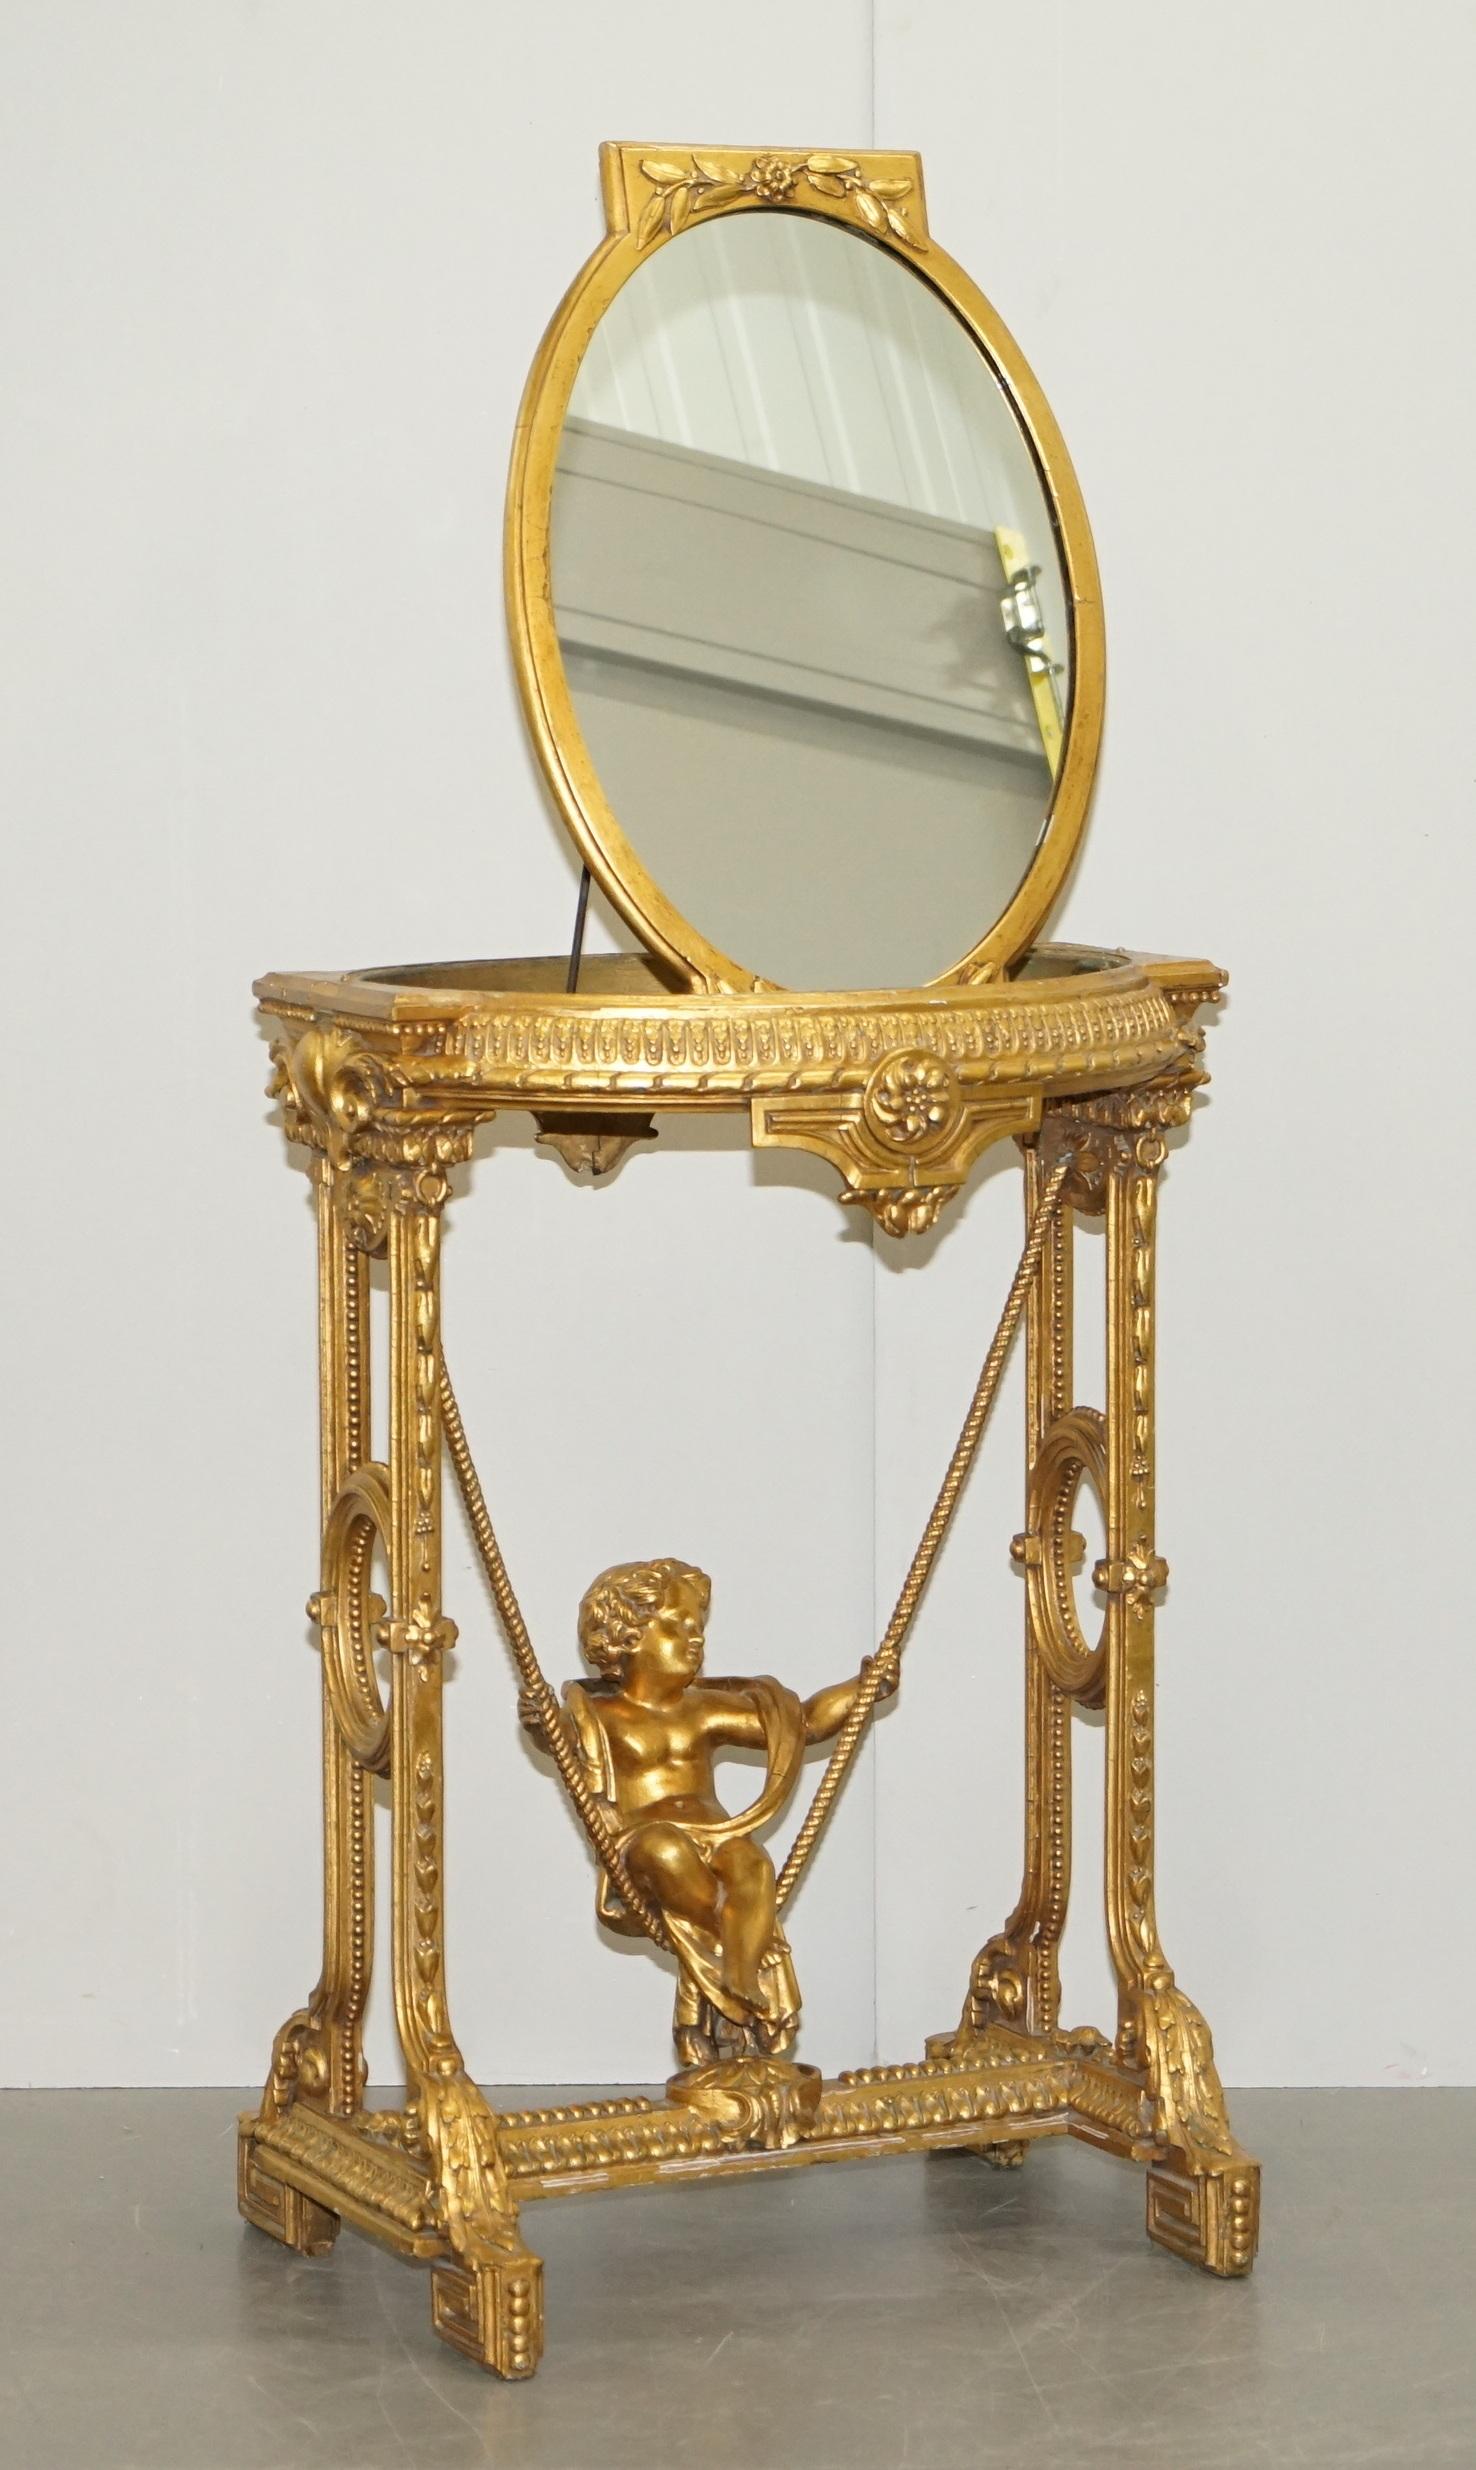 Nous sommes ravis d'offrir à la vente cette belle table d'appoint en bois doré et gesso des années 1920 avec un miroir sur le dessus et des putti sur la base de la balançoire

Une belle pièce, qui attire l'attention dans n'importe quel contexte,